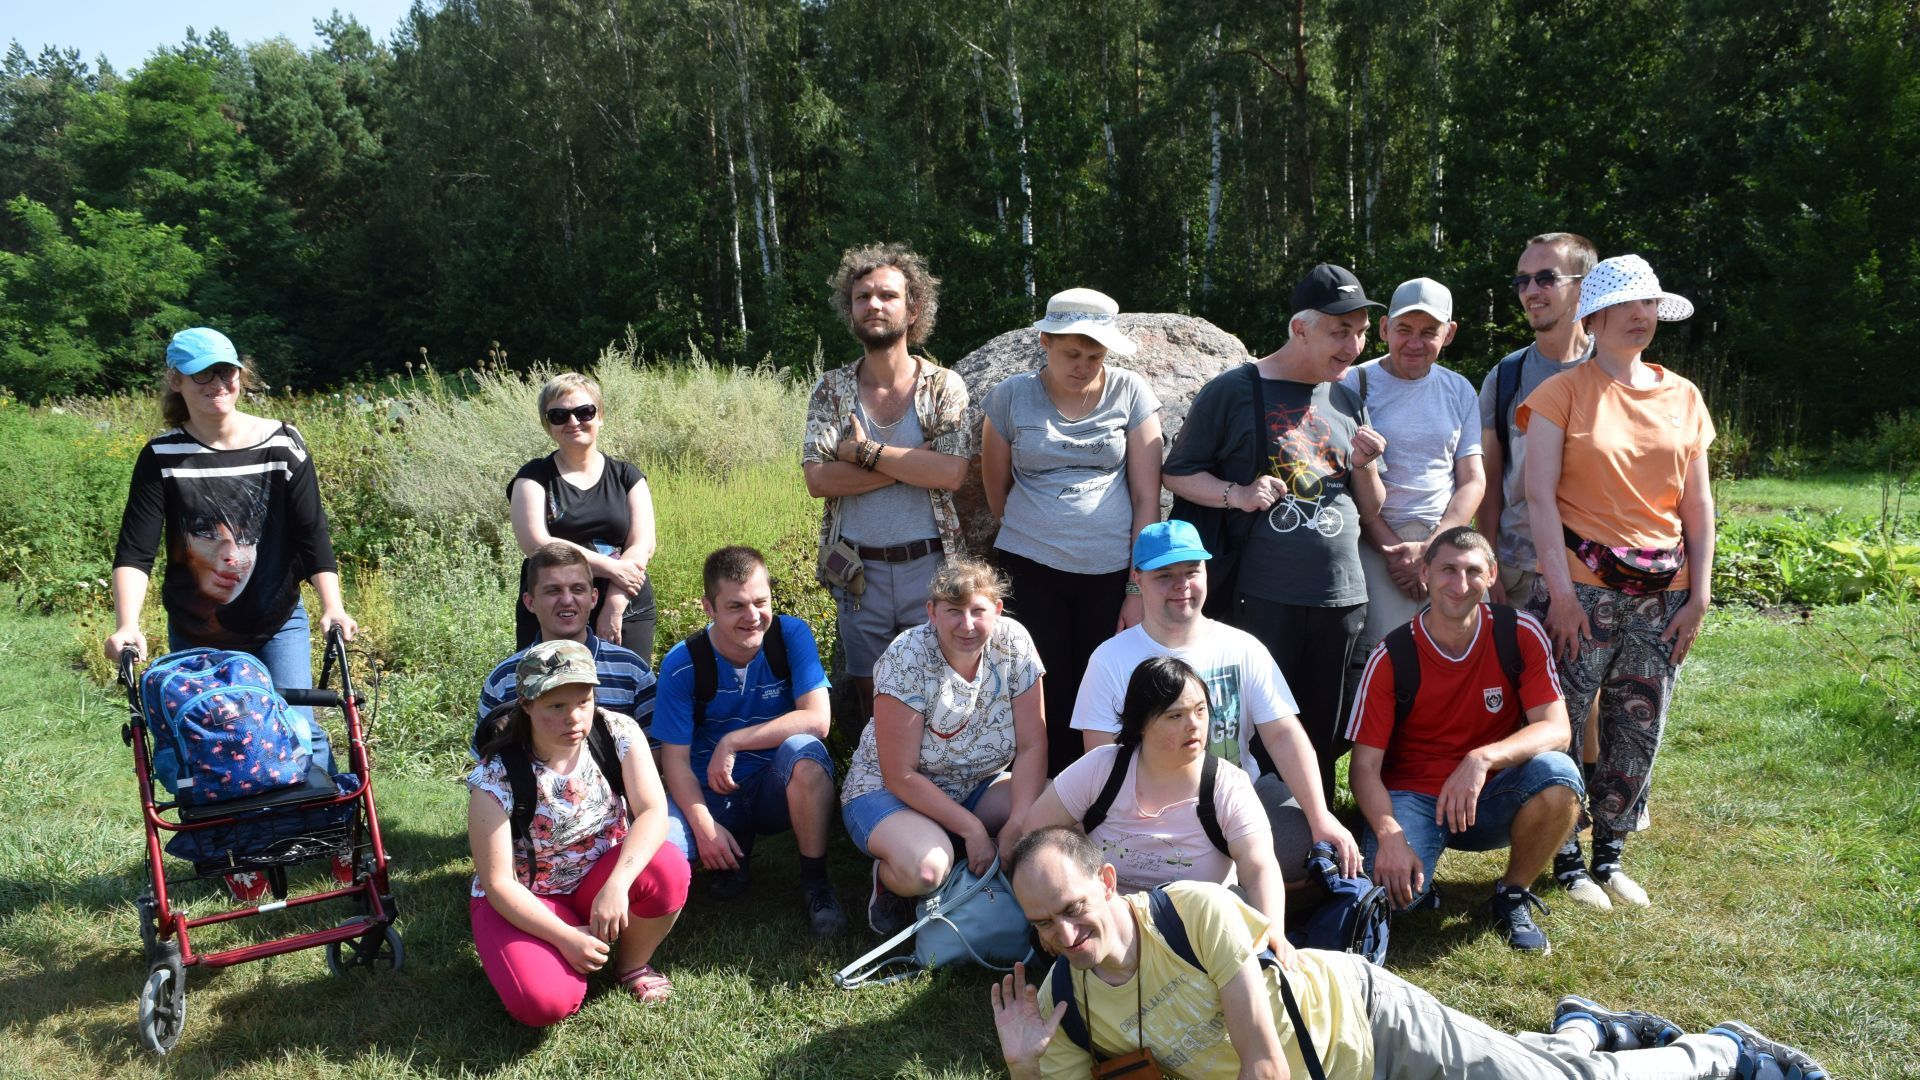 Uczestnicy wraz z panią dyrektor Justyną Juszczak i przewodnikiem przy kamieniu z napisem Podlaski Ogród Botaniczny.